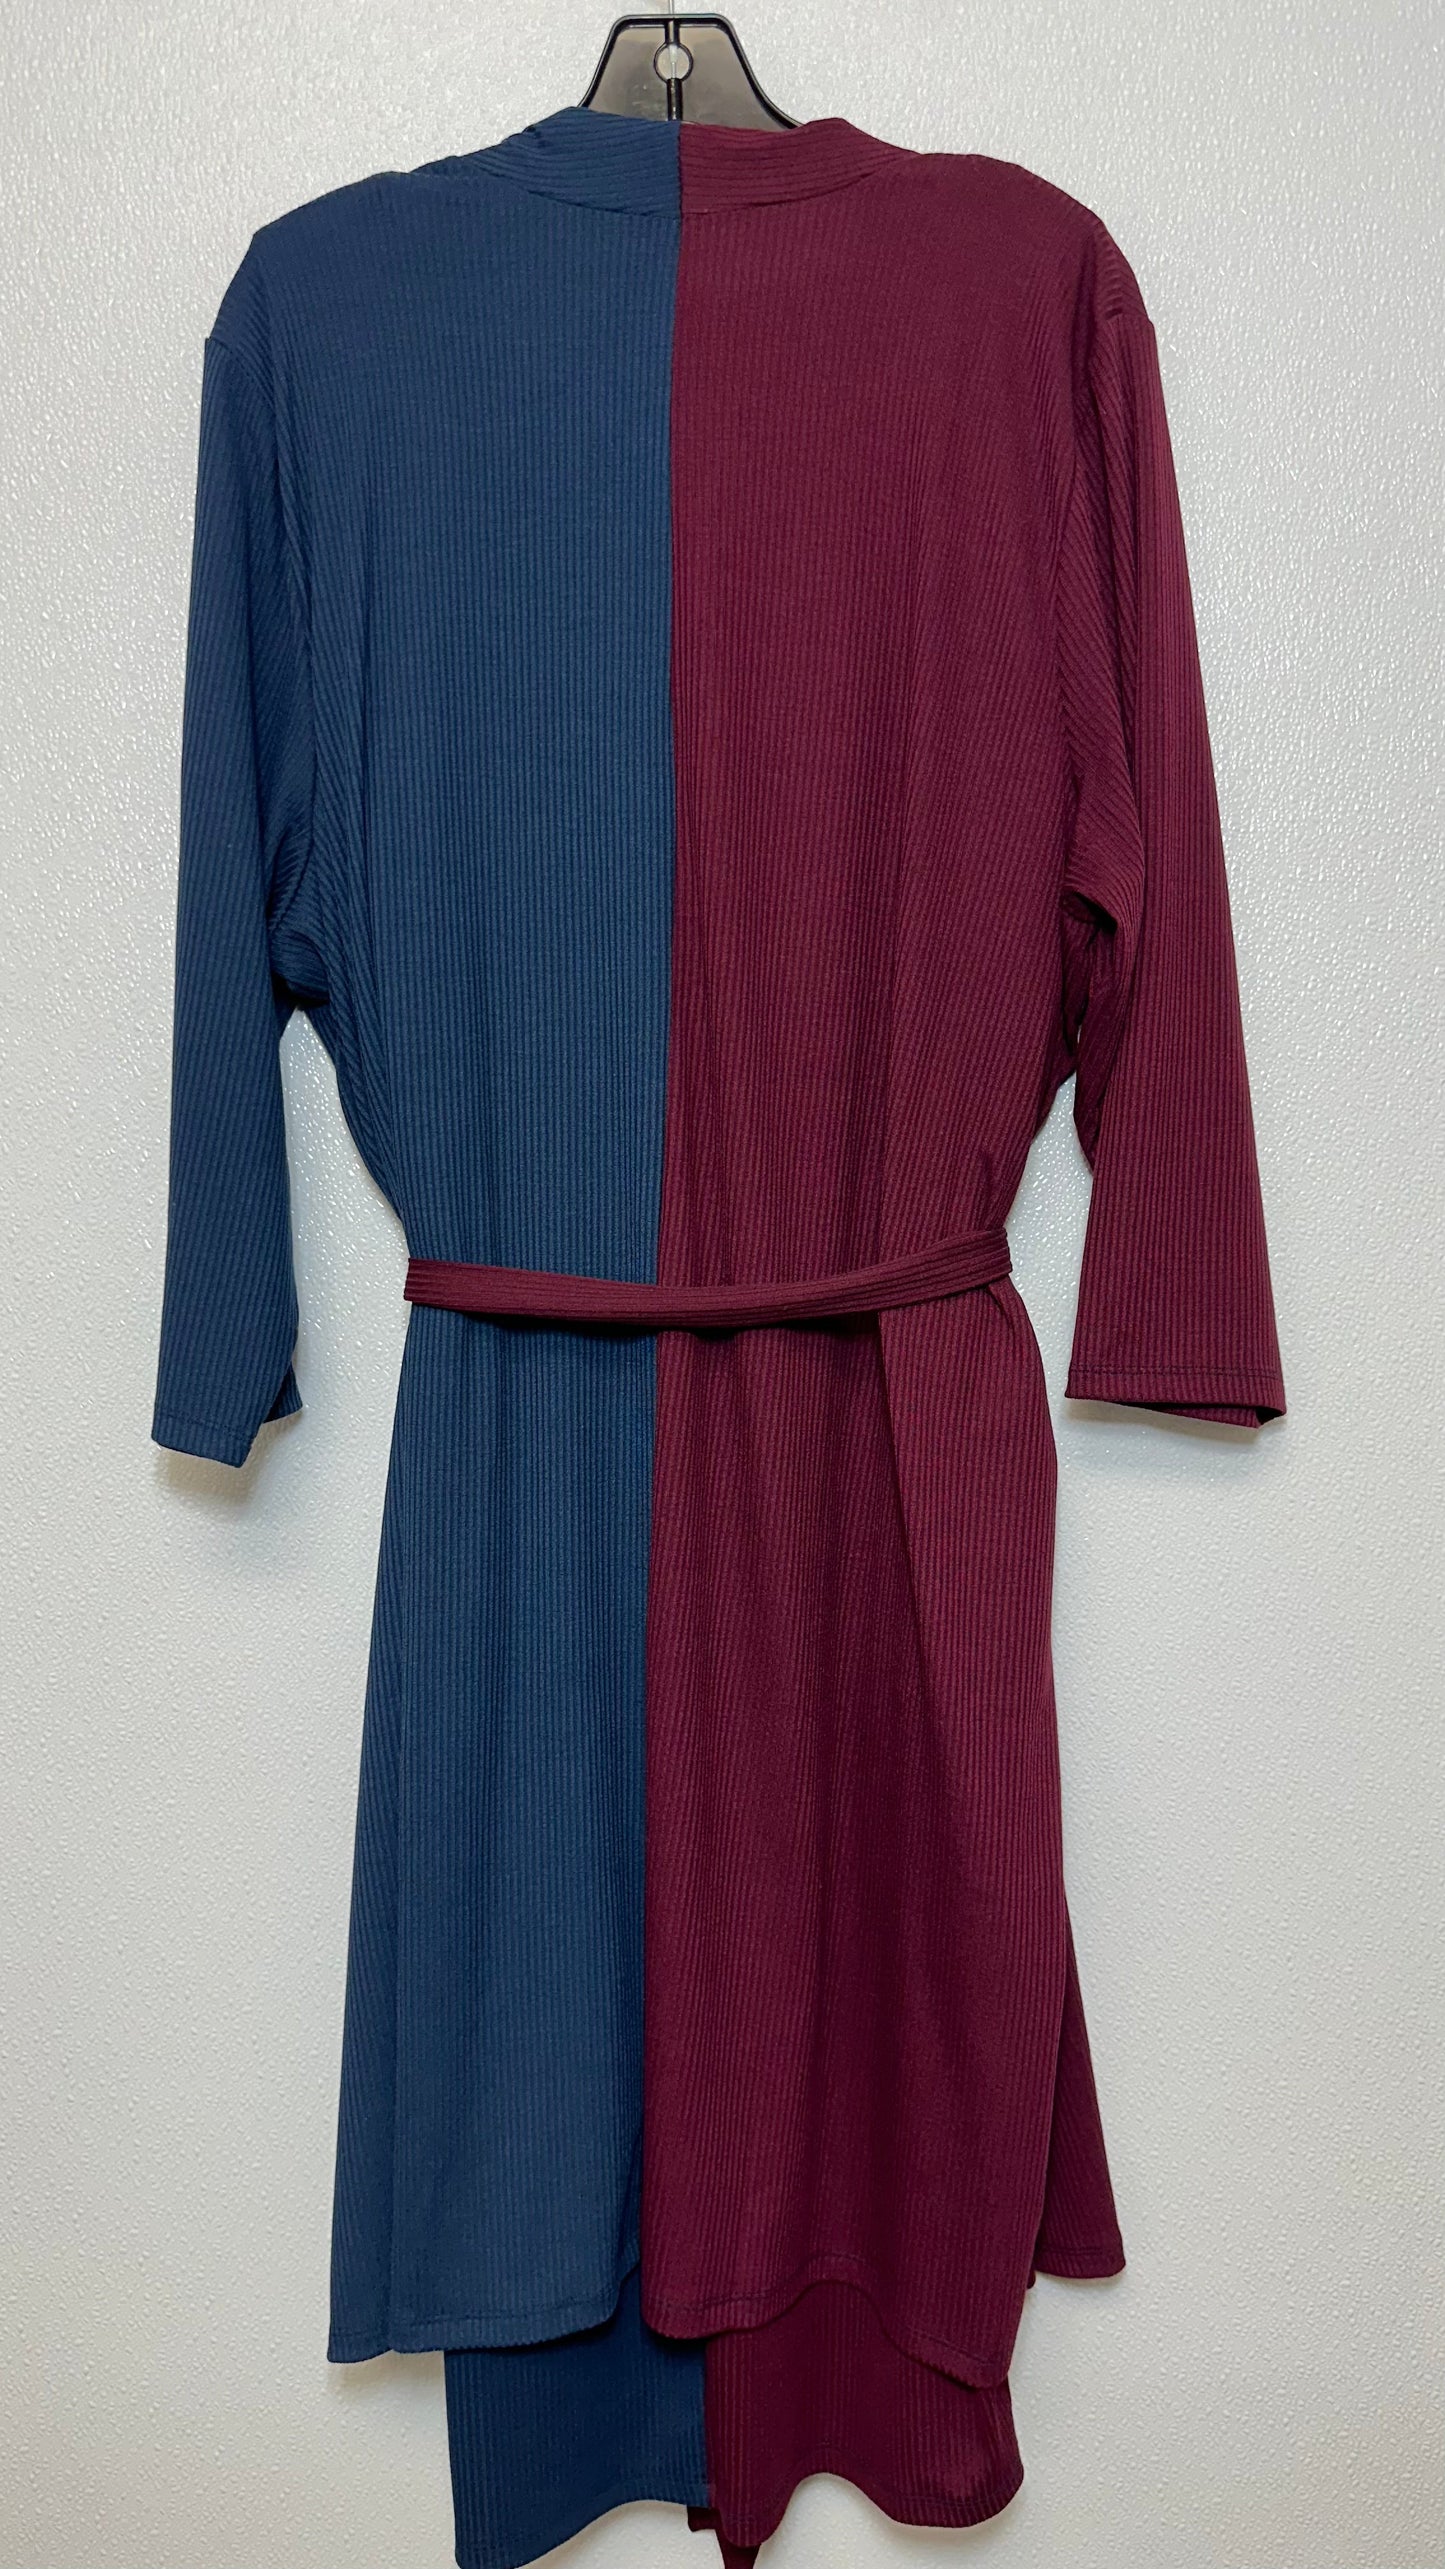 Dress Casual Midi By Lane Bryant  Size: 22